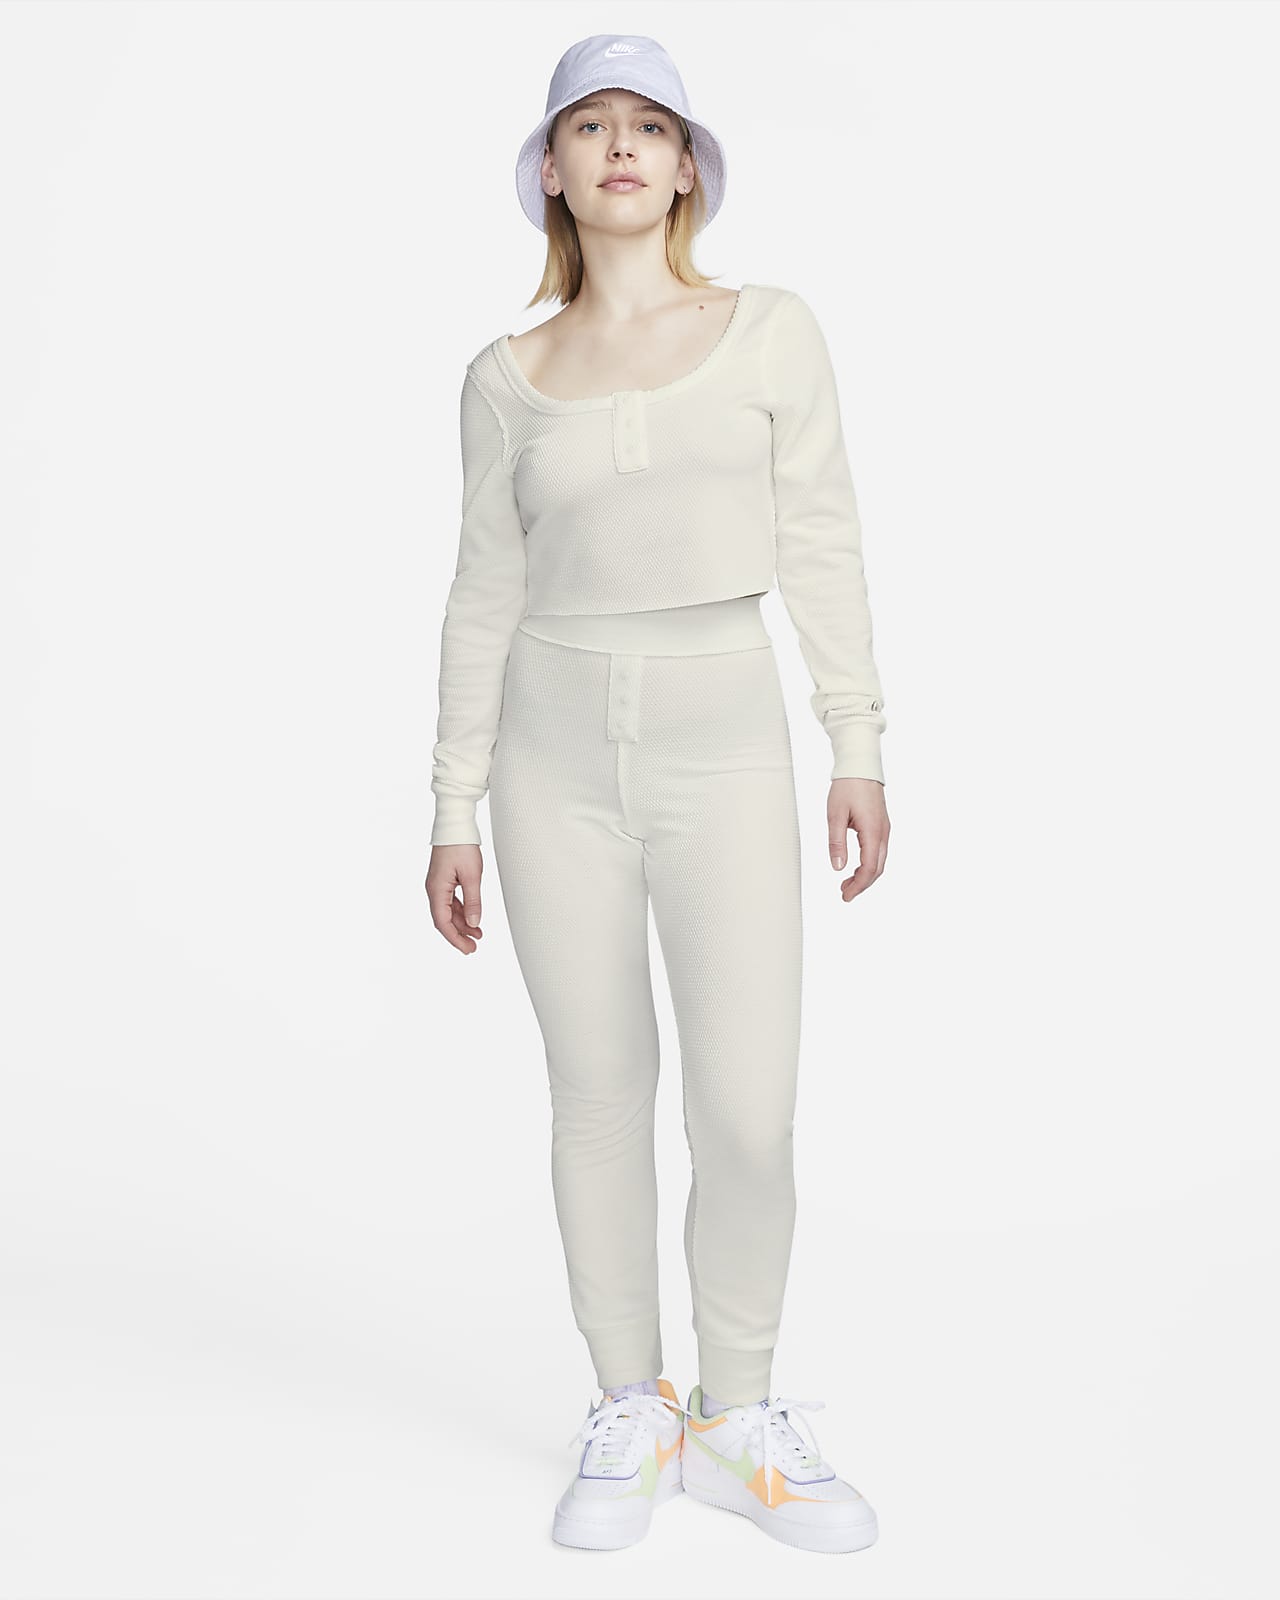 Nike Sportswear Everyday Modern Women\'s Long-Sleeve Crop Top.